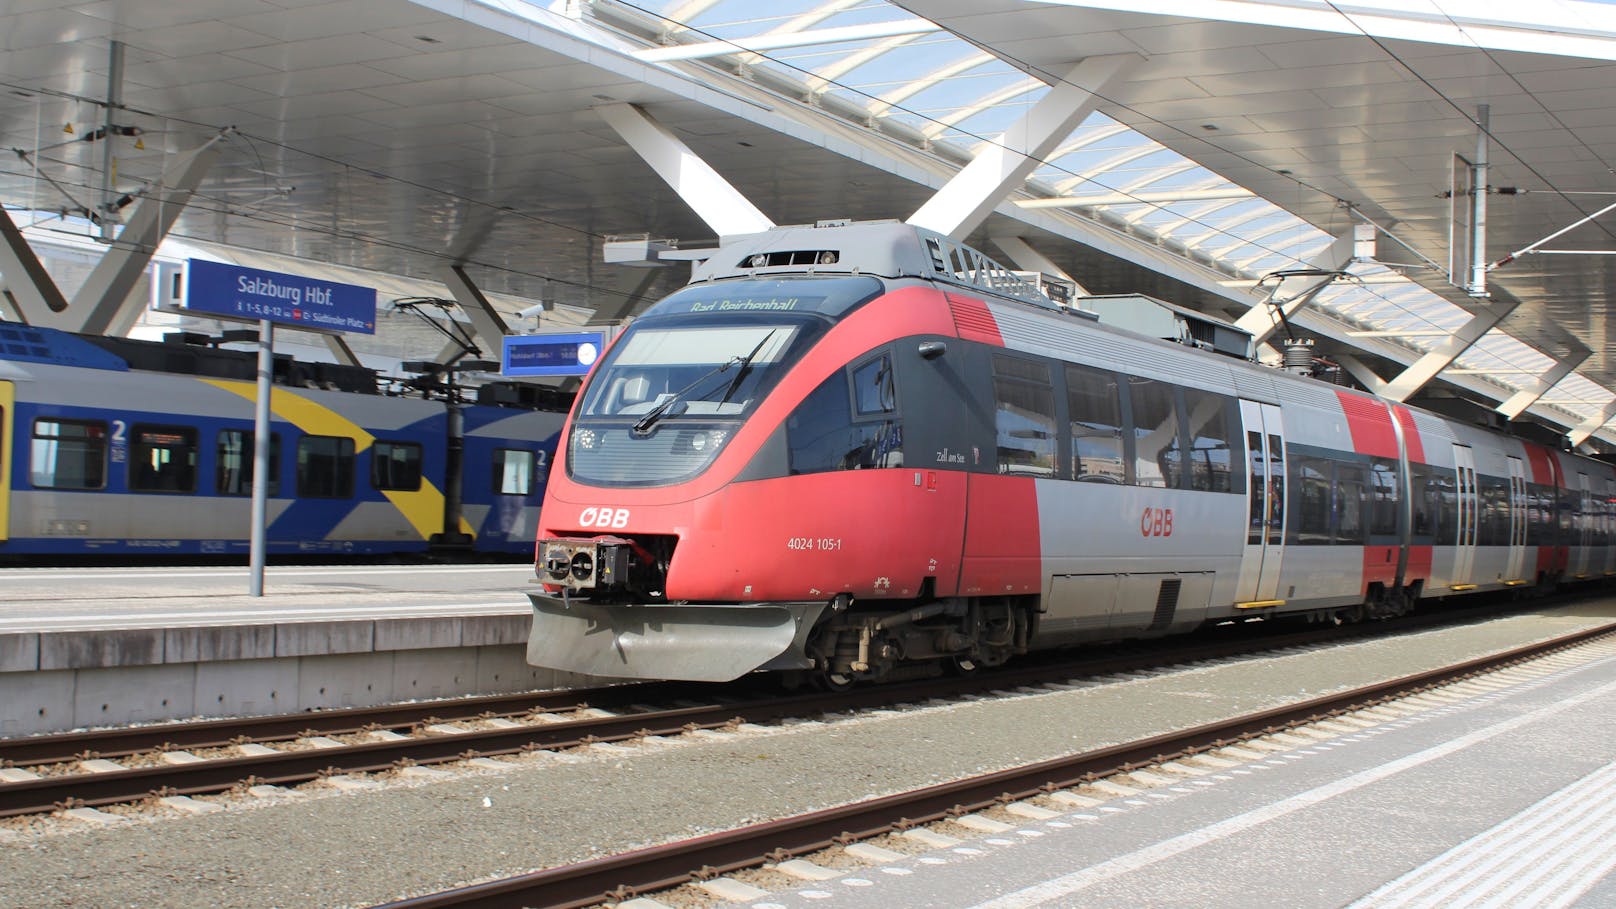 Bis voraussichtlich Dienstagfrüh ist die Strecke Salzburg-München nur bedingt befahrbar. ÖBB-Kunden können auf die Westbahn umsteigen.